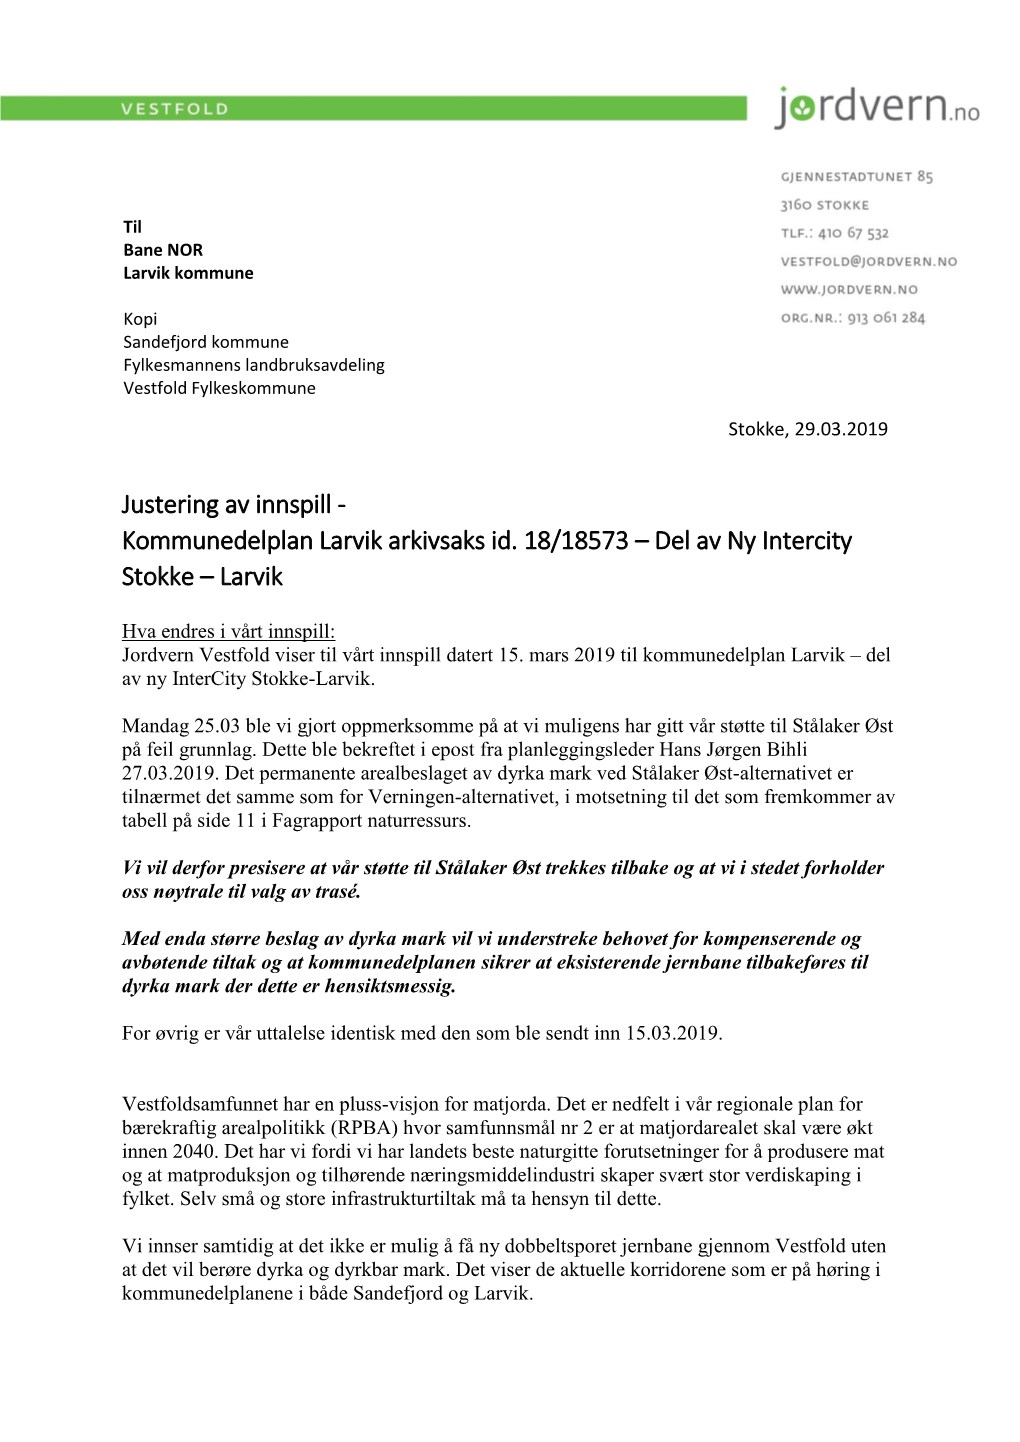 Uttalelse Justert Ny Intercity Gjennom Larvik 2019